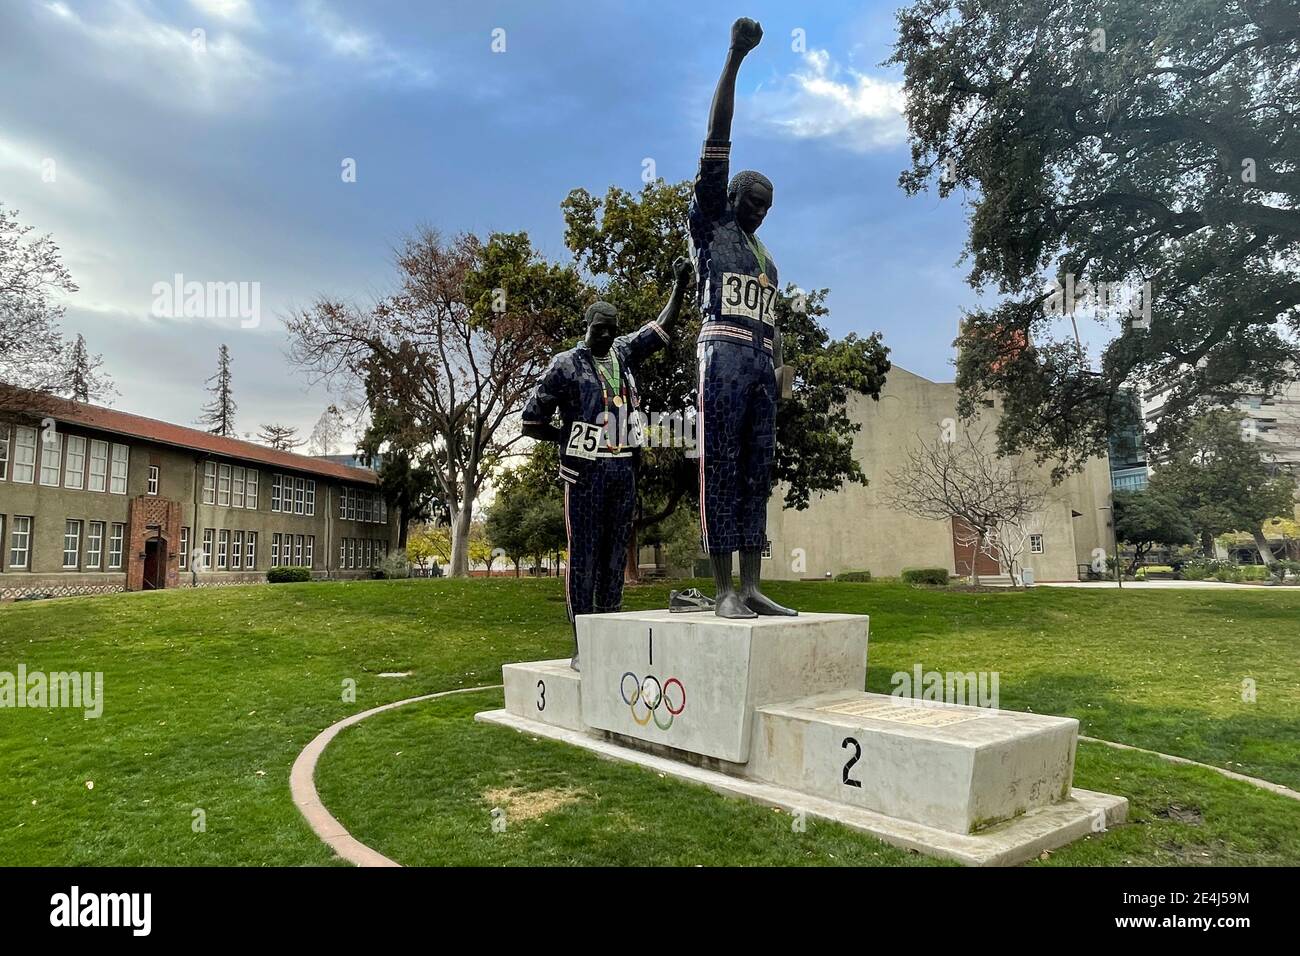 Riconoscimento della statua della Vittoria Salute presso la San Jose state University La protesta nera del medalista d'oro Tommie Smith e del bronzo Medaglia John Car Foto Stock